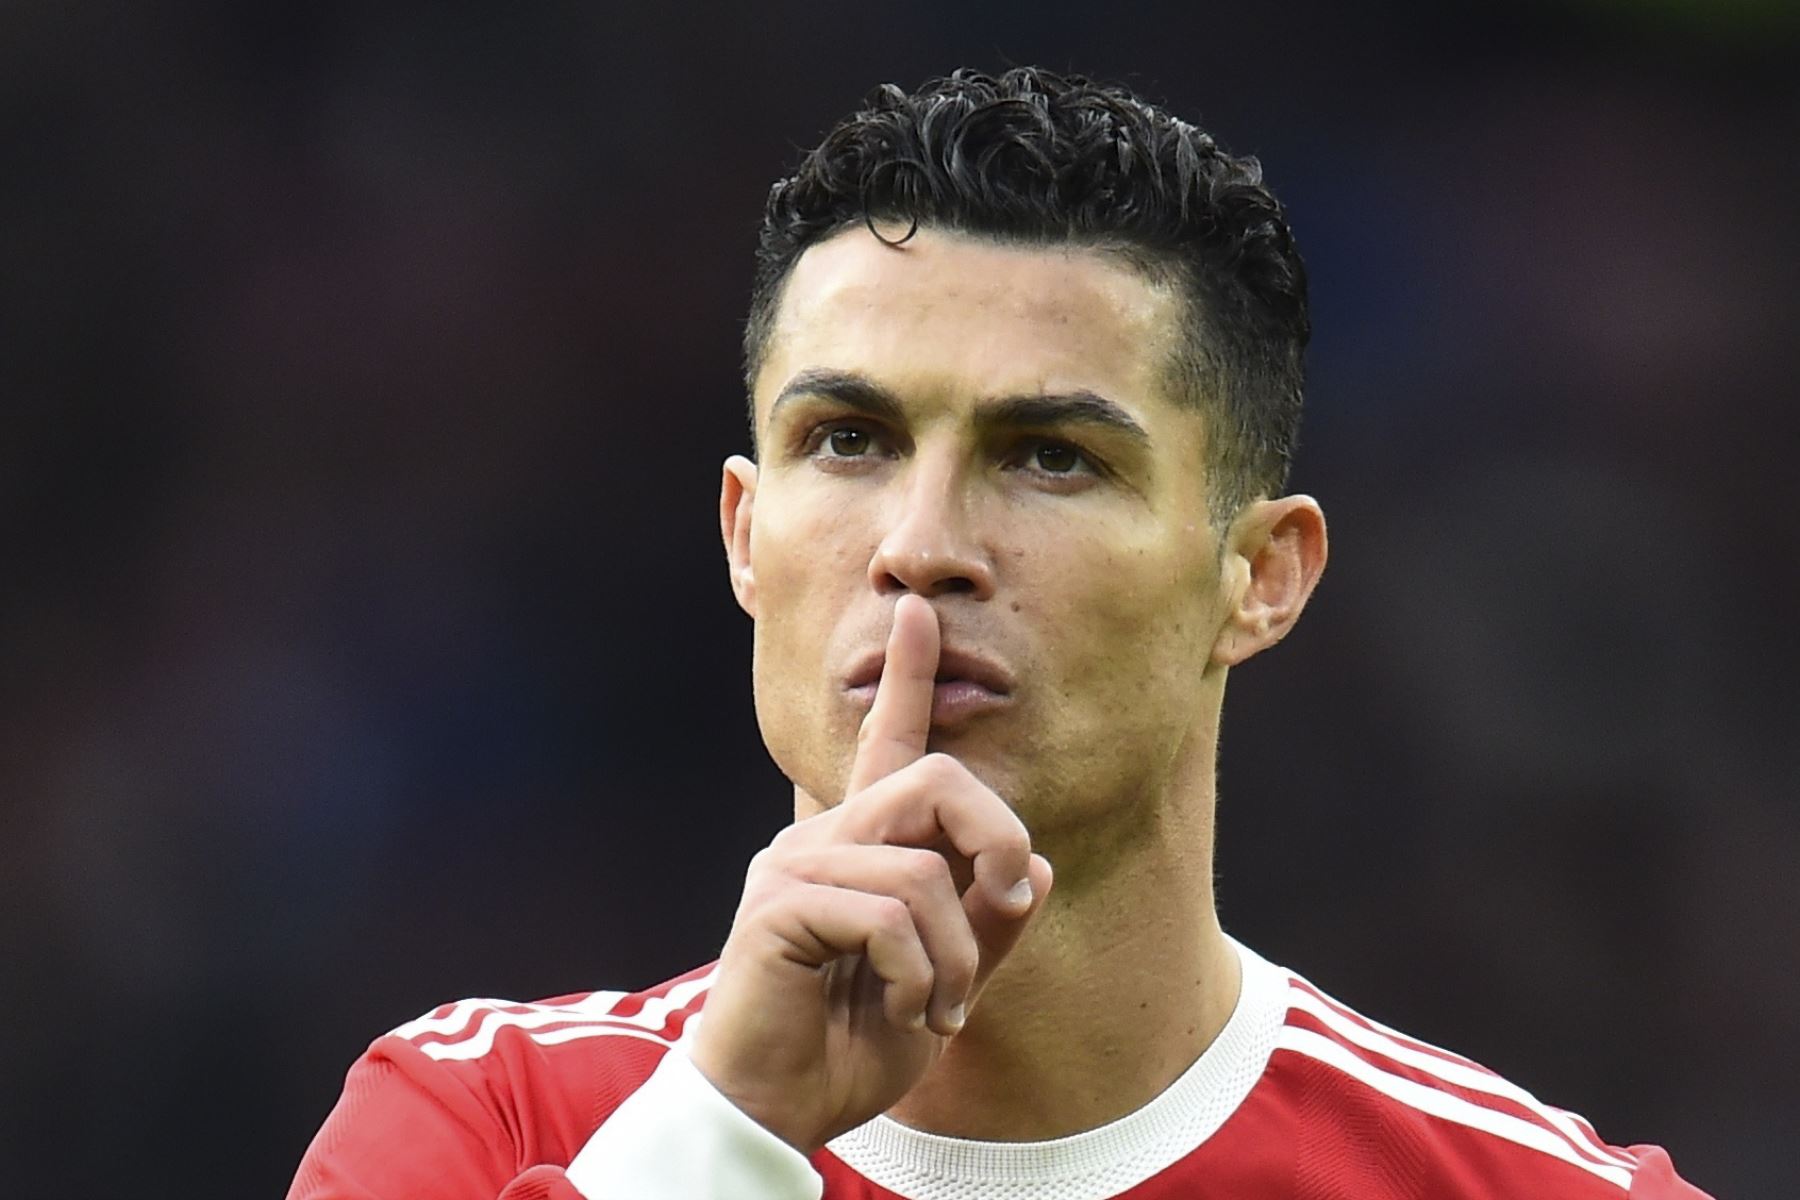 Cristiano Ronaldo del Manchester United hace gestos durante el partido de la Premier League. Foto: EFE